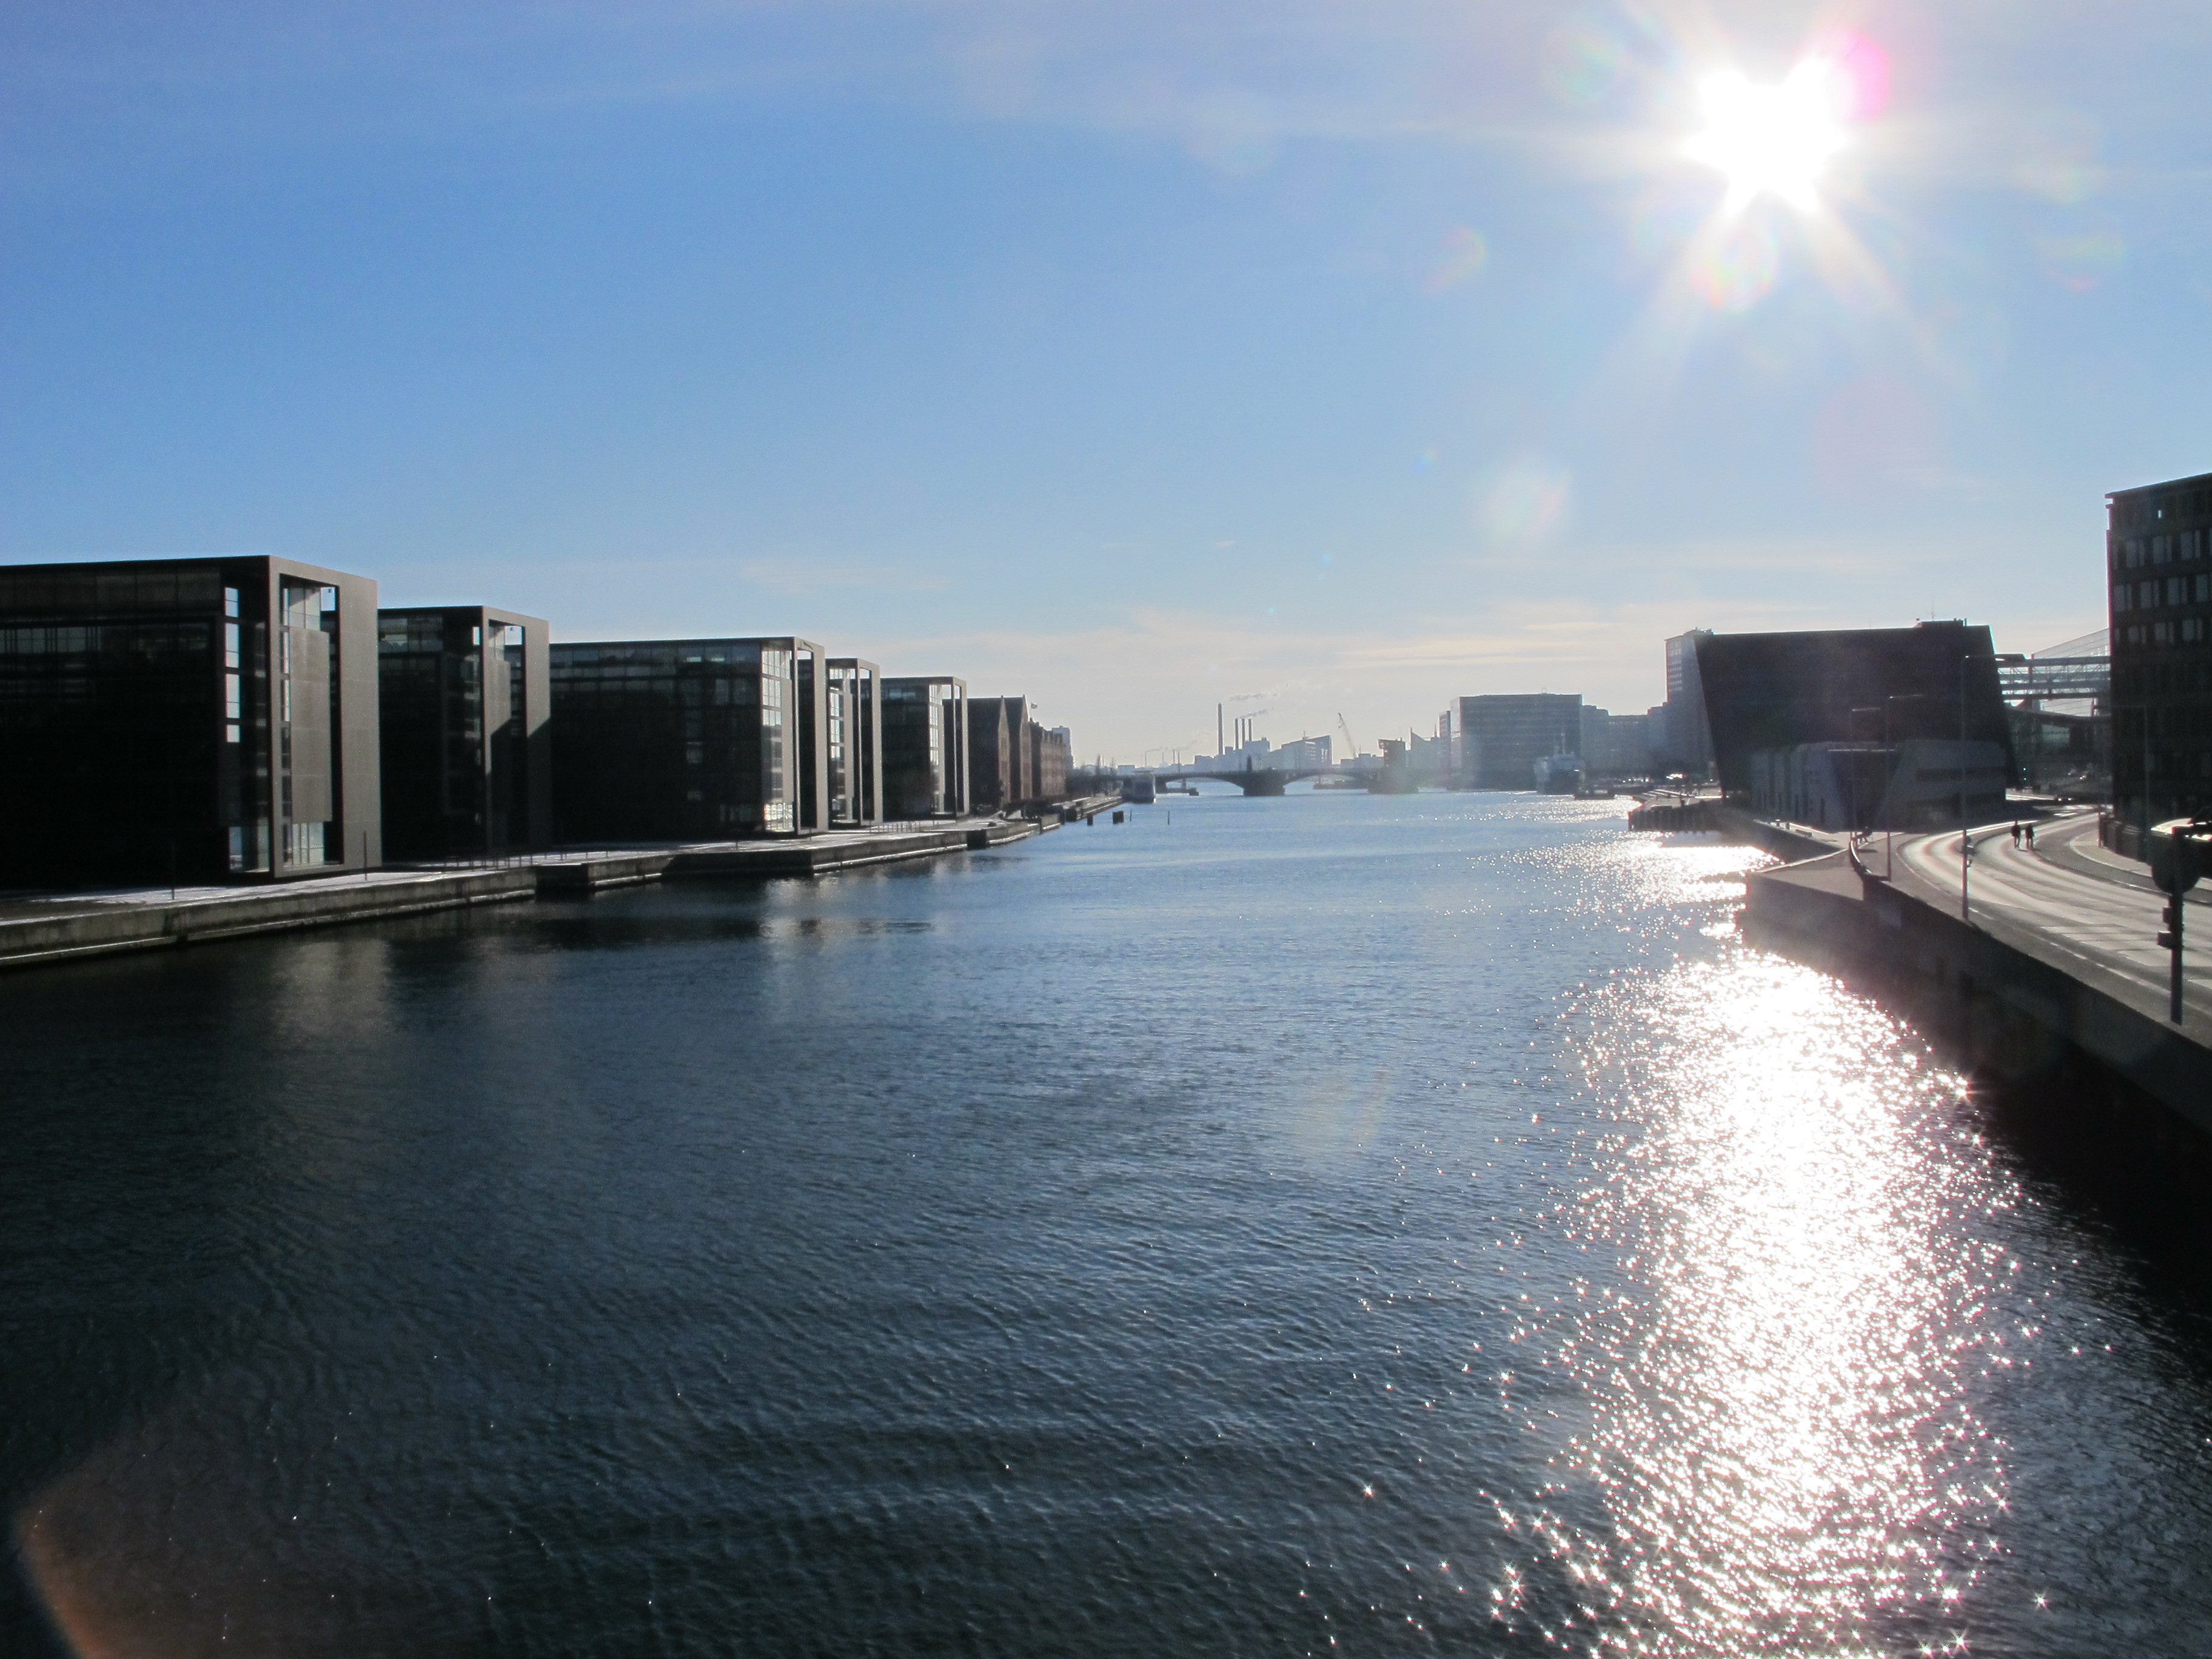 Handlungsfelder sowie Wirkfaktoren für eine zukunftsfähige Stadtentwicklung wurden auch am Beispiel Kopenhagens identifiziert.